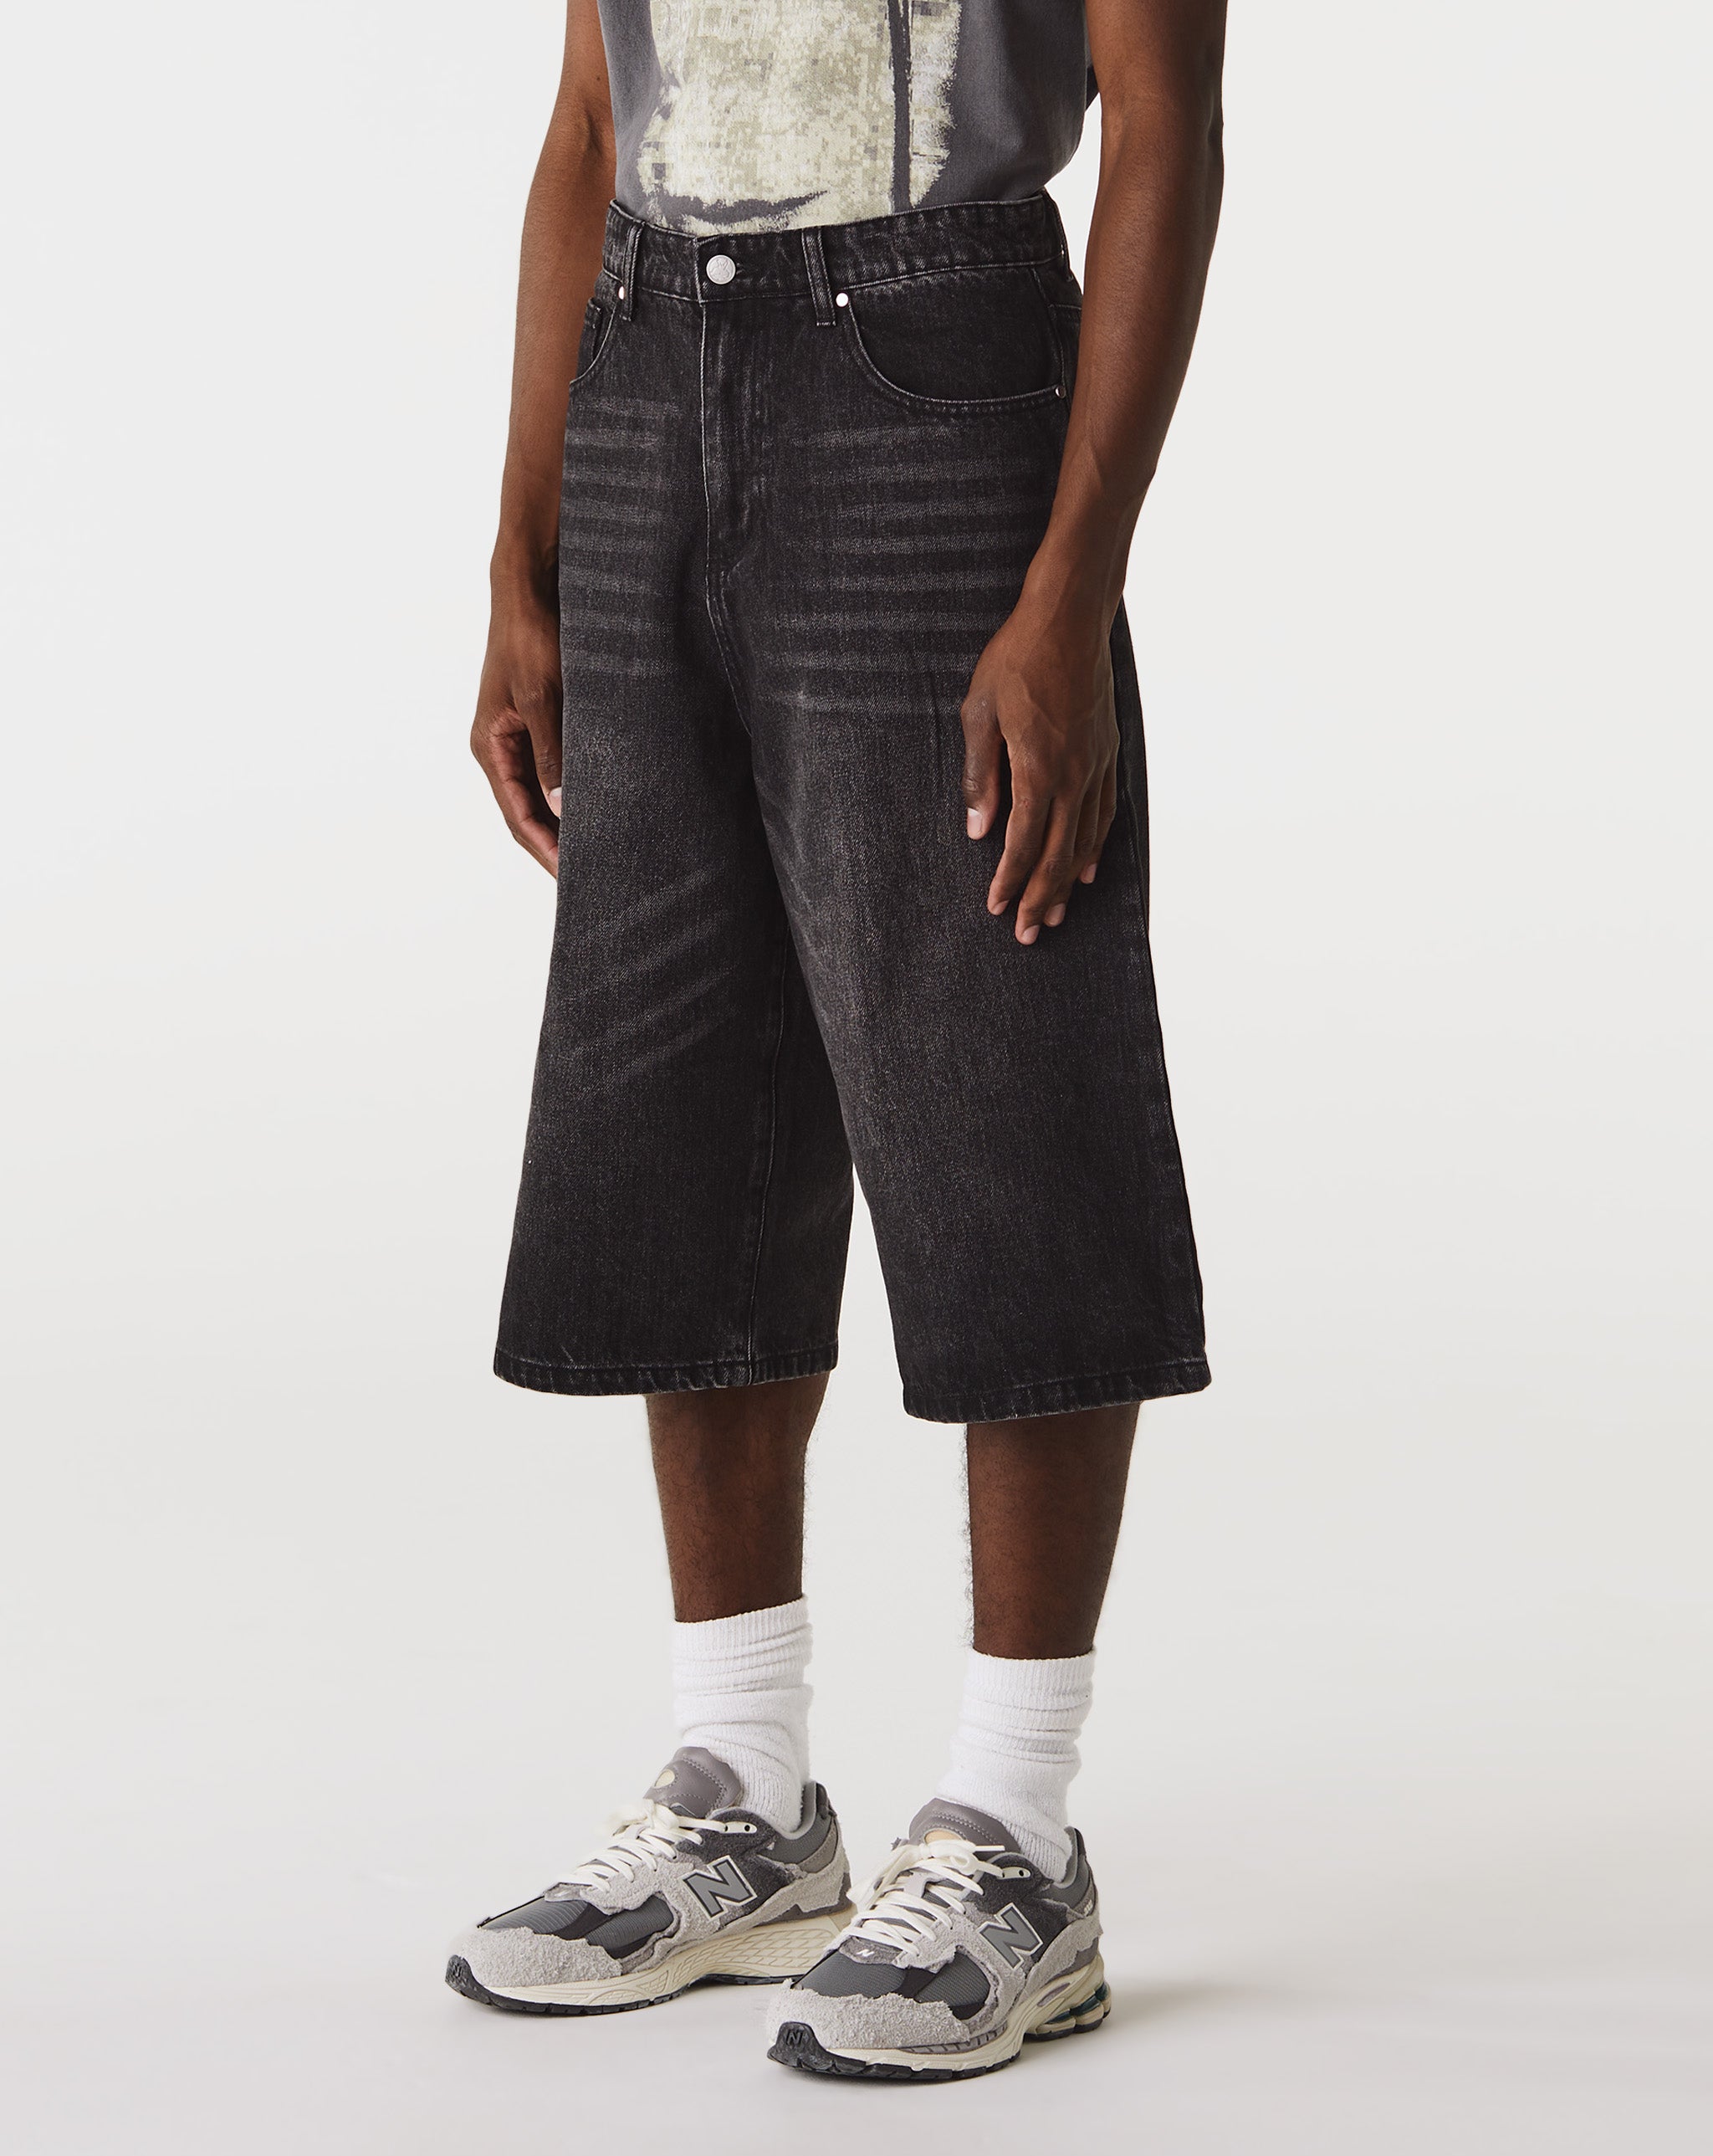 Basketcase Gallery Breacher Denim Shorts  - Cheap Urlfreeze Jordan outlet